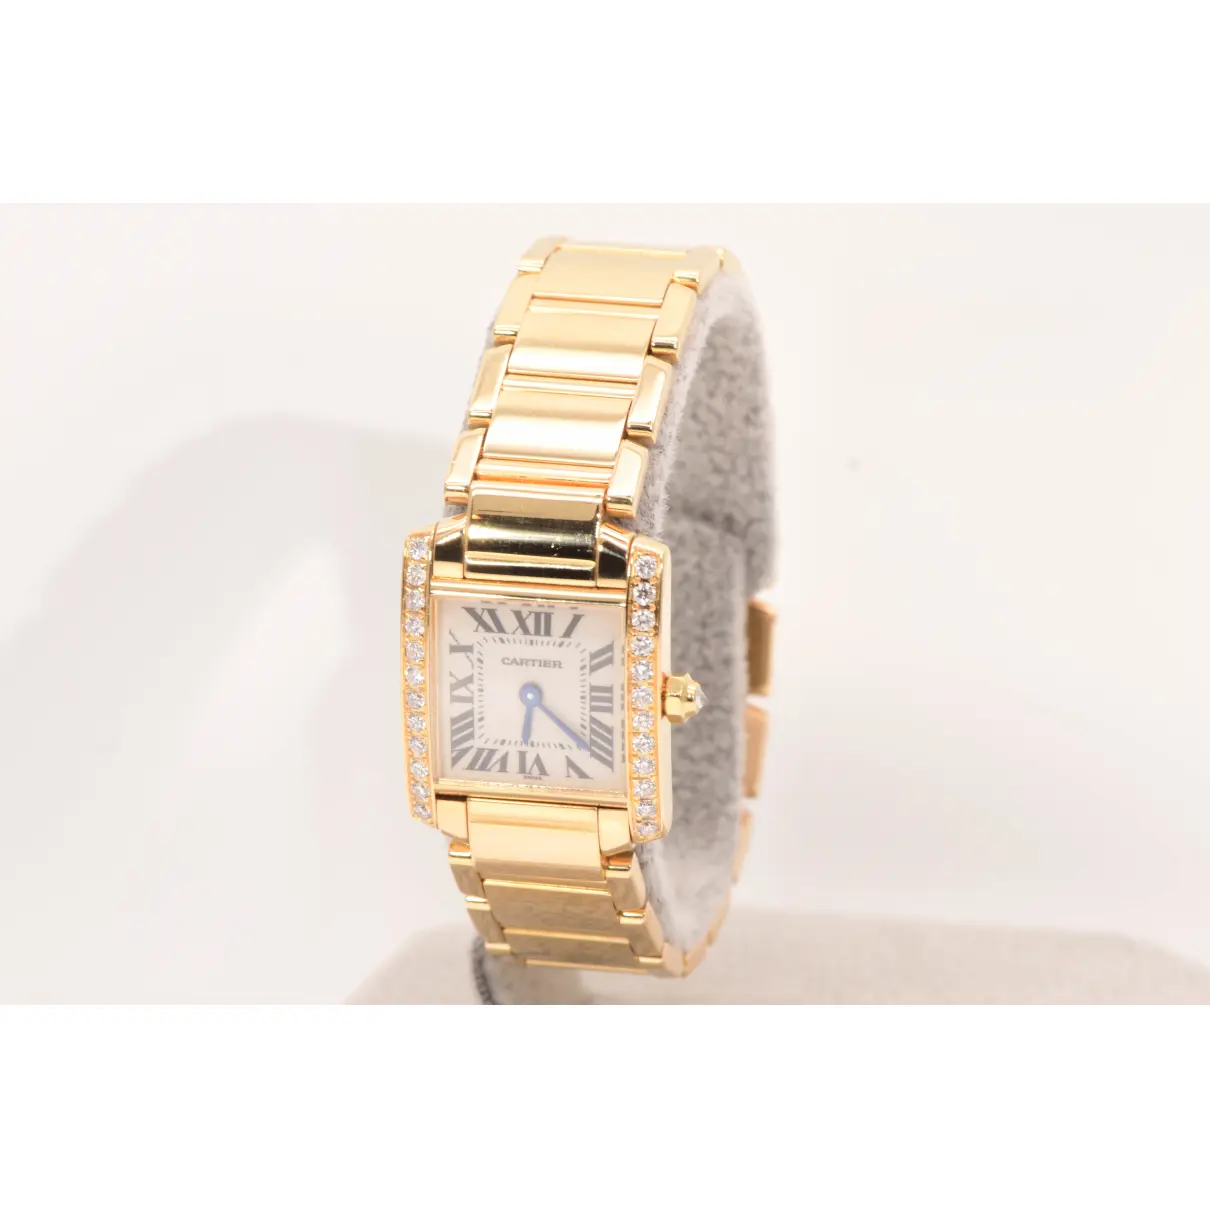 Buy Cartier Tank Française yellow gold watch online